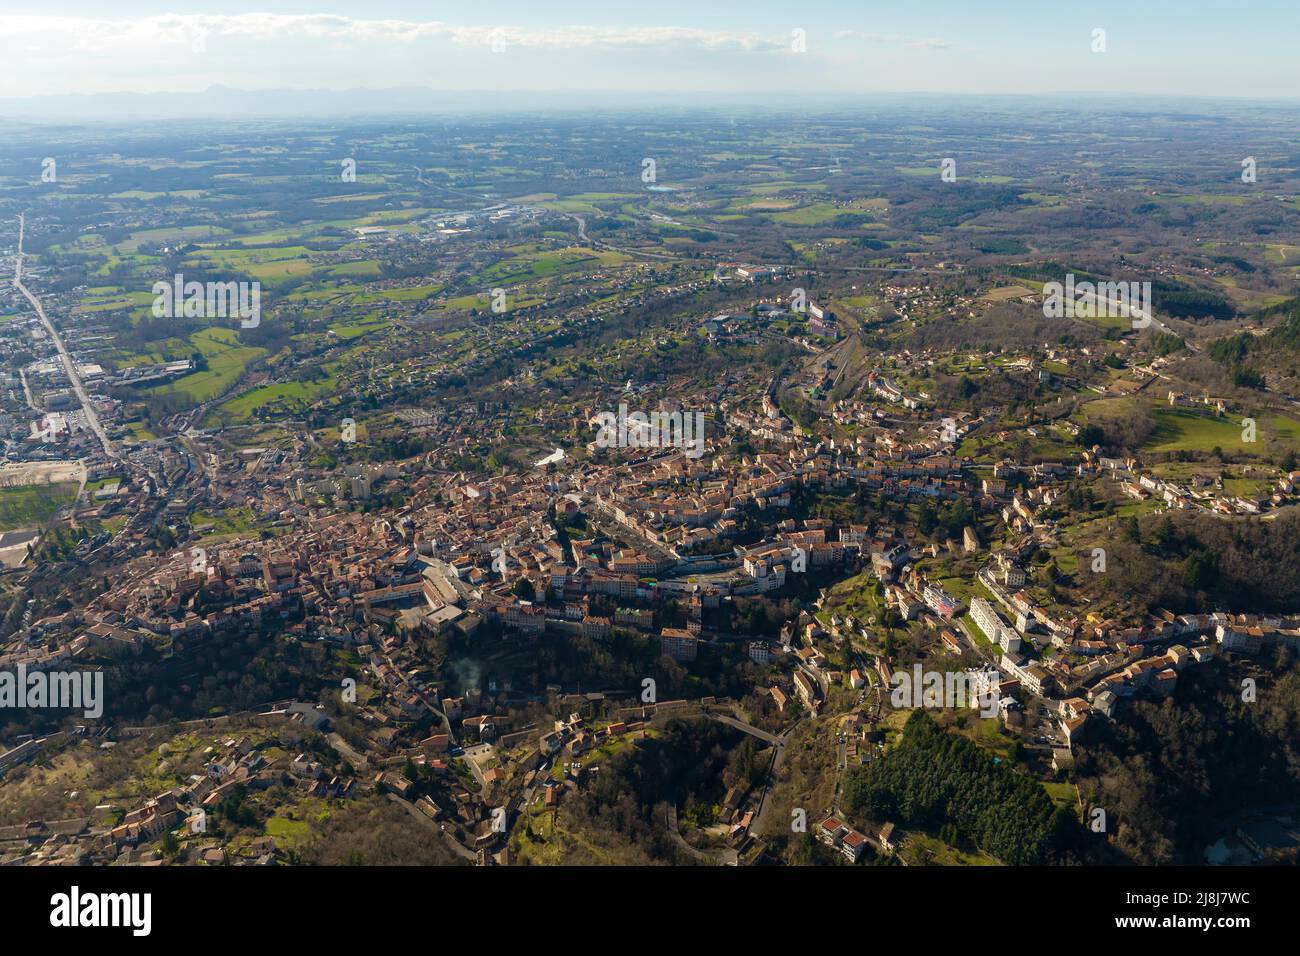 Veduta aerea del centro storico denso della città di Thiers nel dipartimento di Puy-de-Dome, regione Auvergne-Rhone-Alpes in Francia. Tetti di vecchi edifici e. Foto Stock